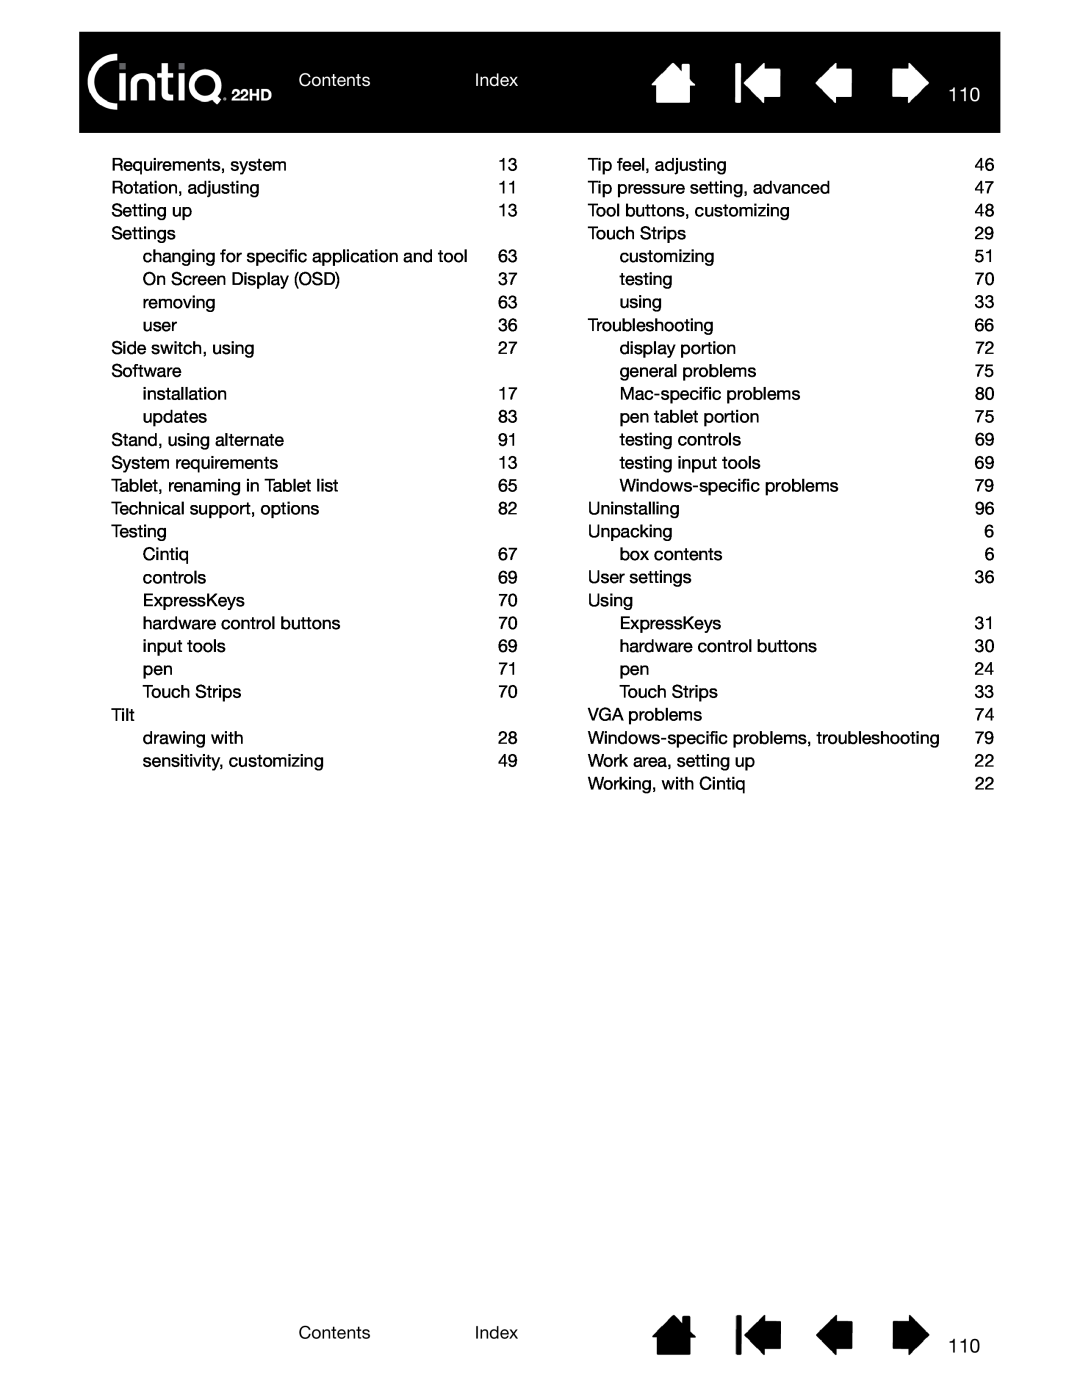 Wacom DTK-2200 user manual Contents, Index 